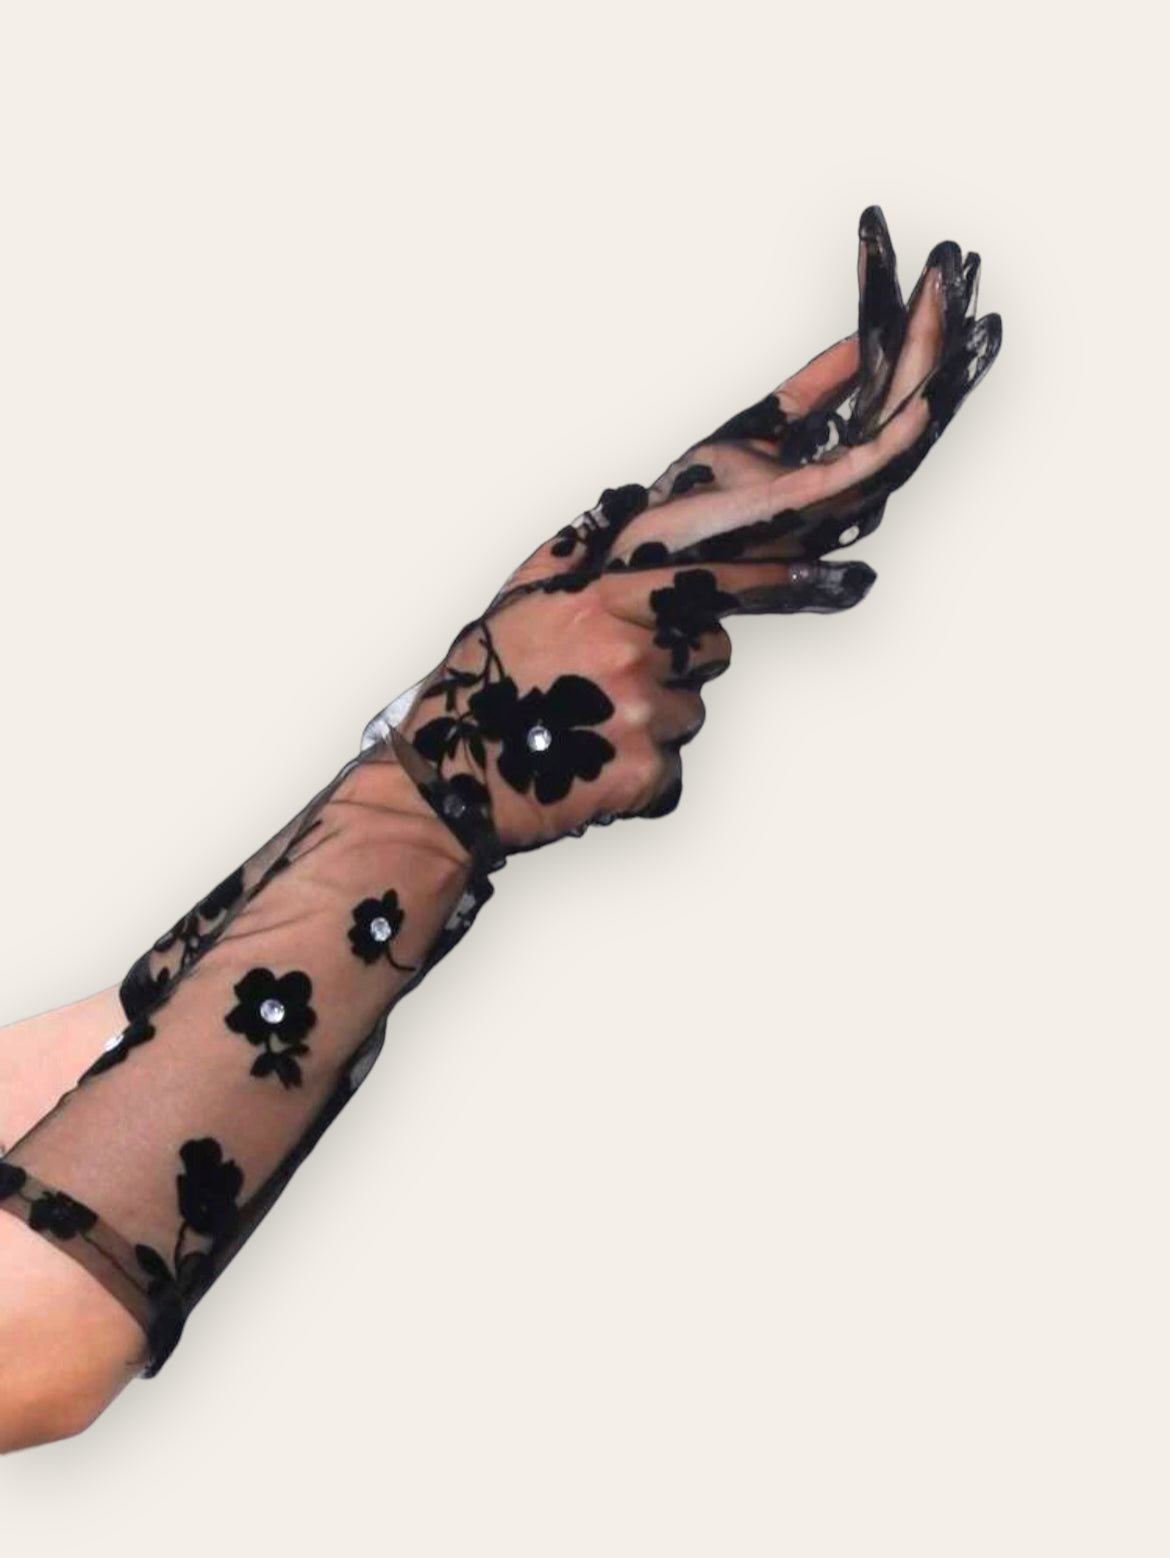 elbow length sheer black gloves